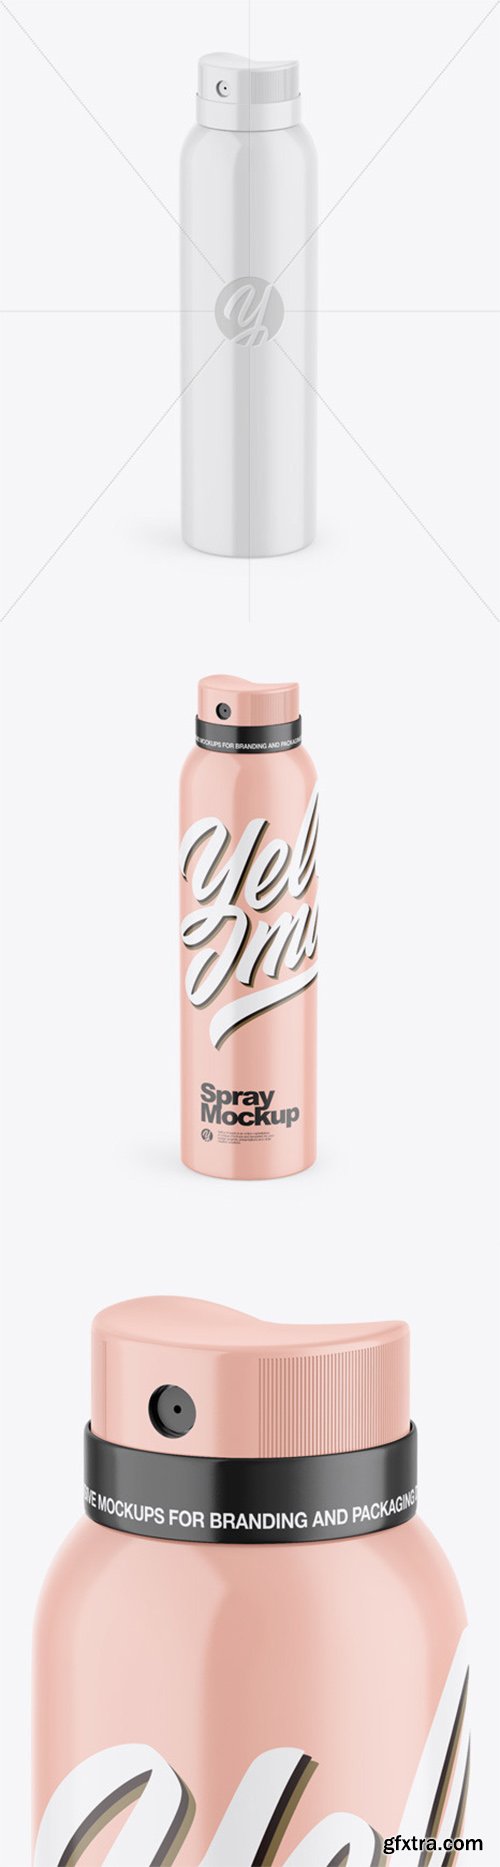 Glossy Aerosol Spray Bottle Mockup 55430